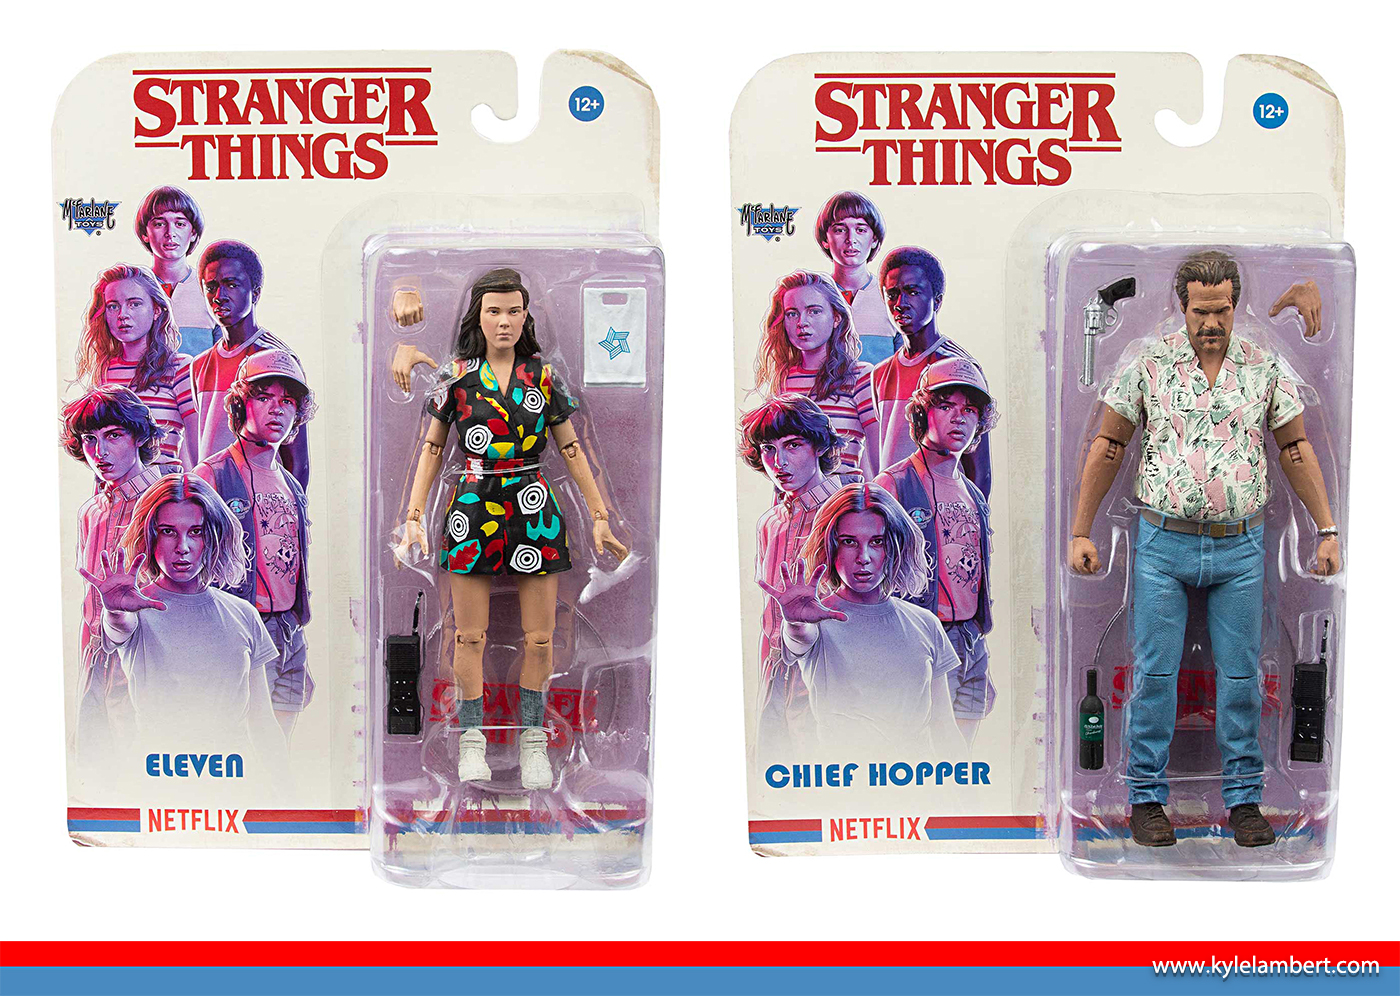 Stranger Things - Merchandise & Packaging Art - McFarlane Toys - Art